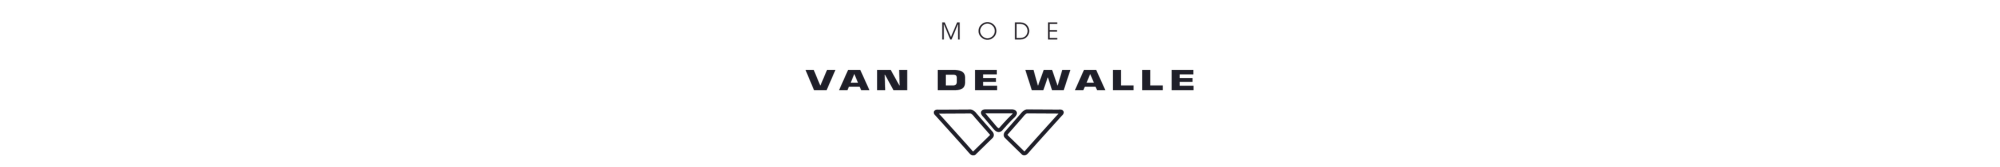 Mode Van De Walle logo